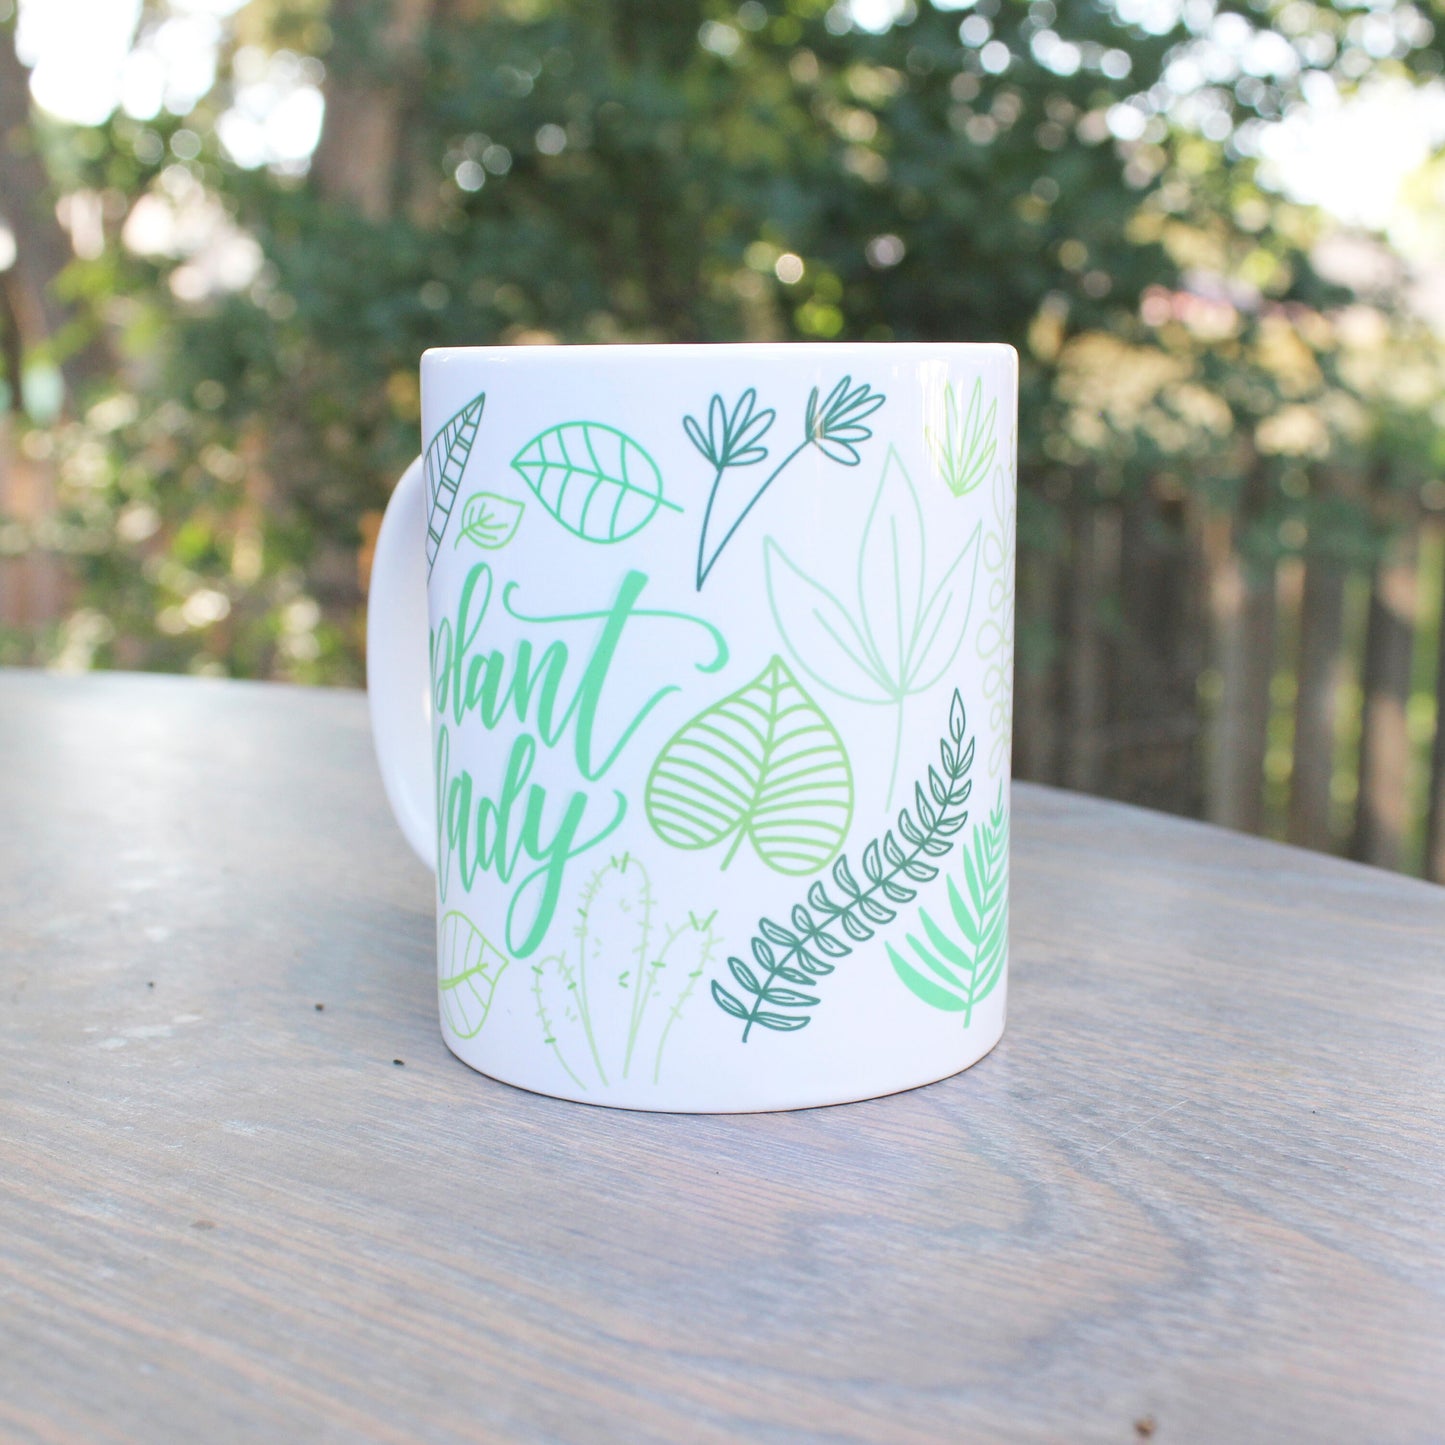 Crazy plant lady mug